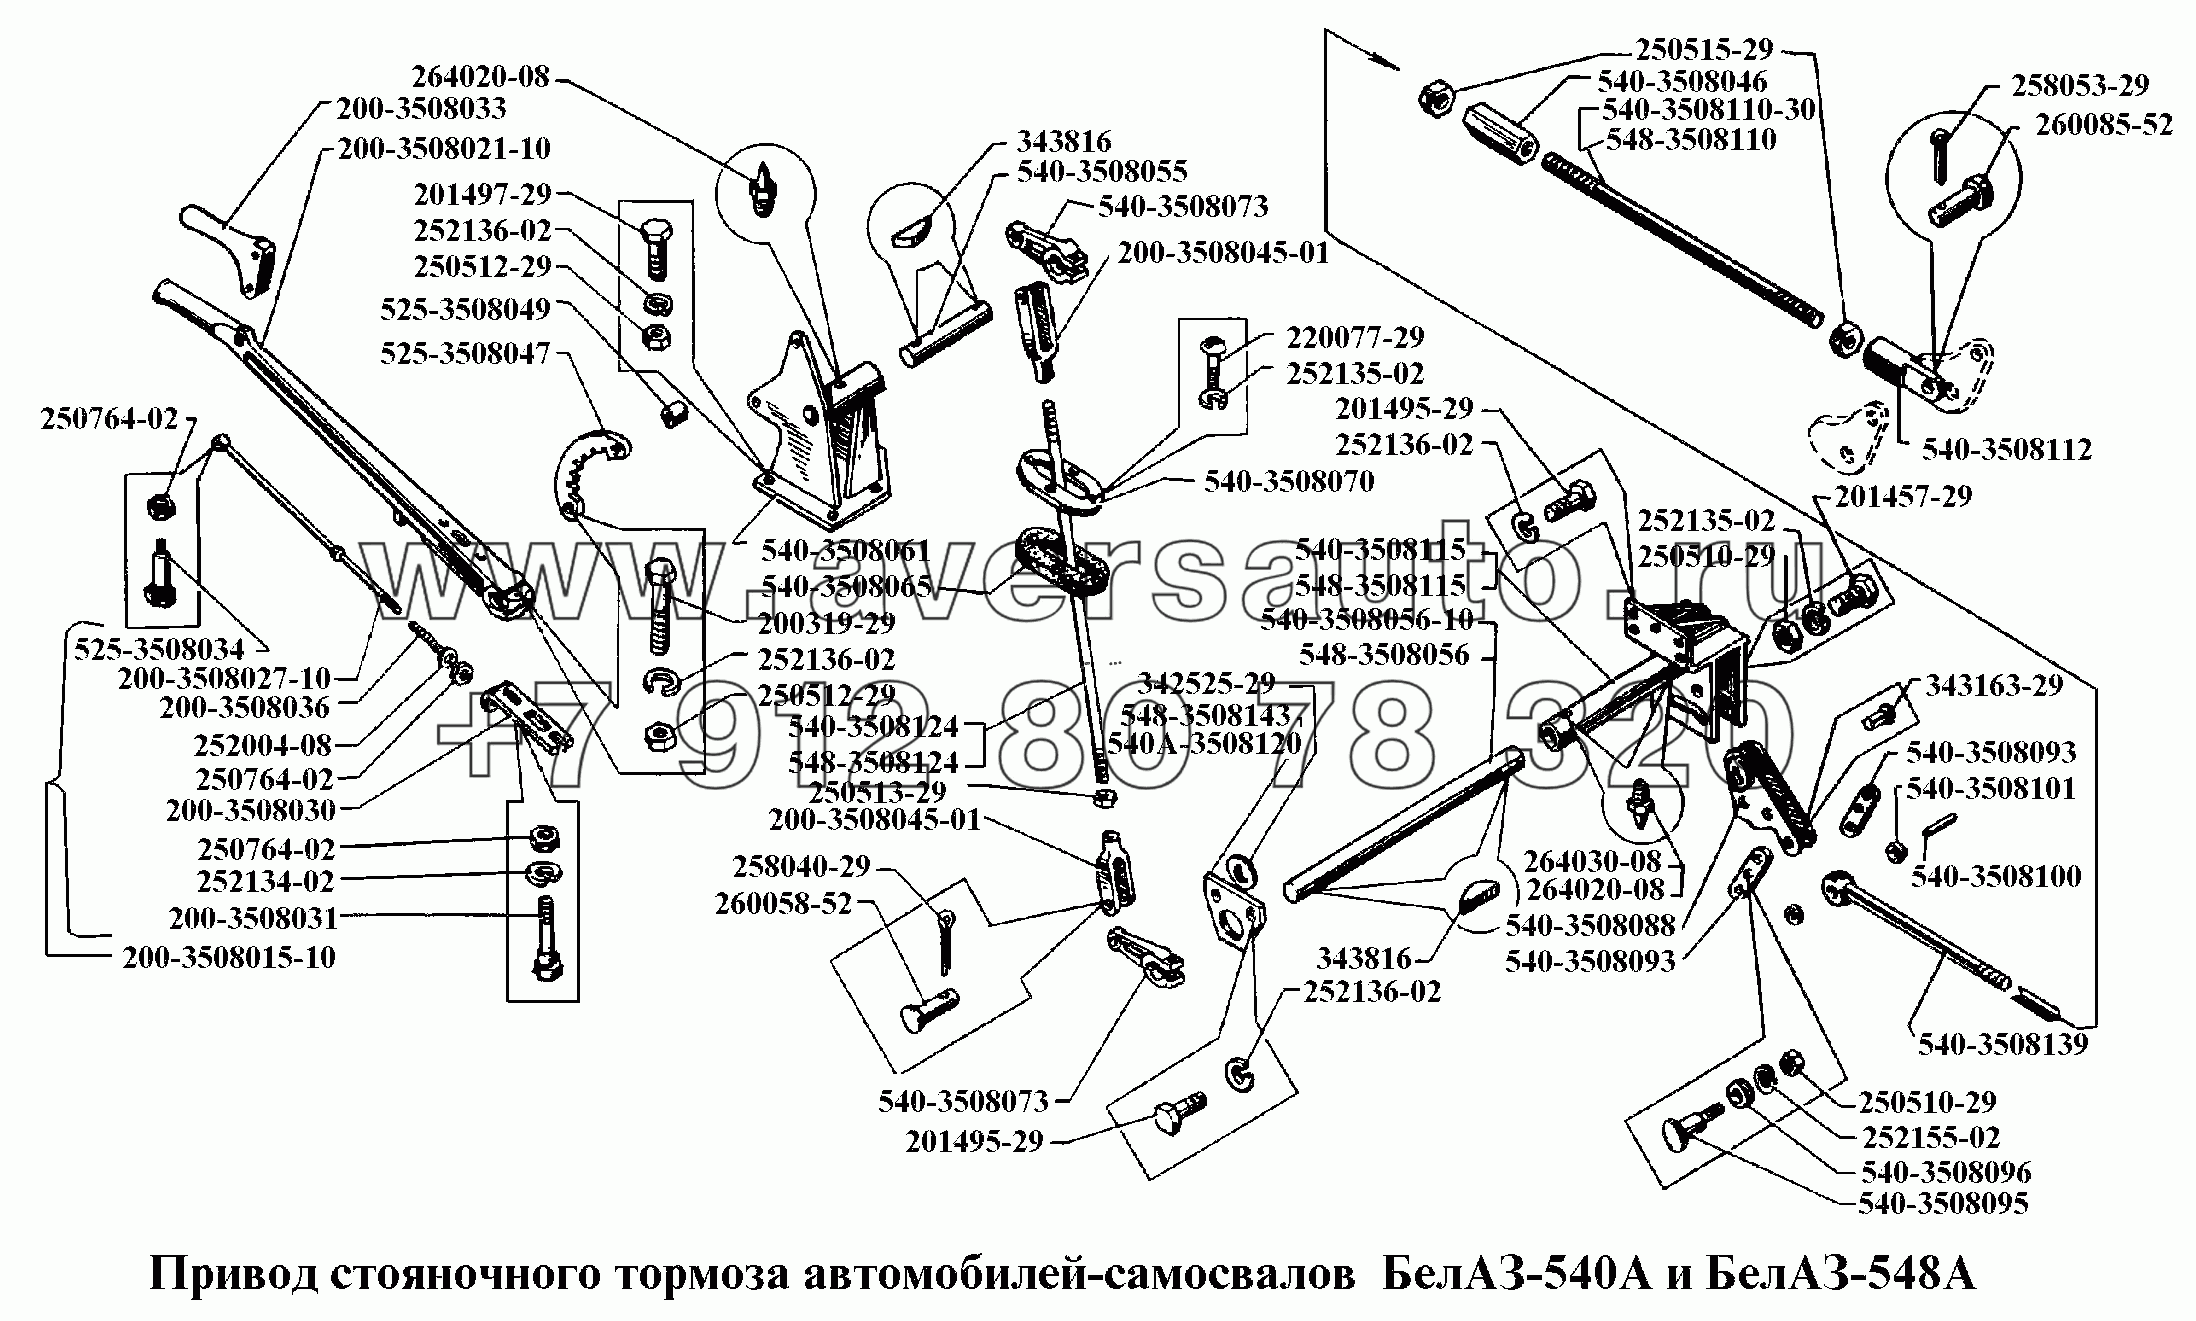 Привод стояночного тормоза автомобилей-самосвалов БелАЗ-540А и БелАЗ-548А